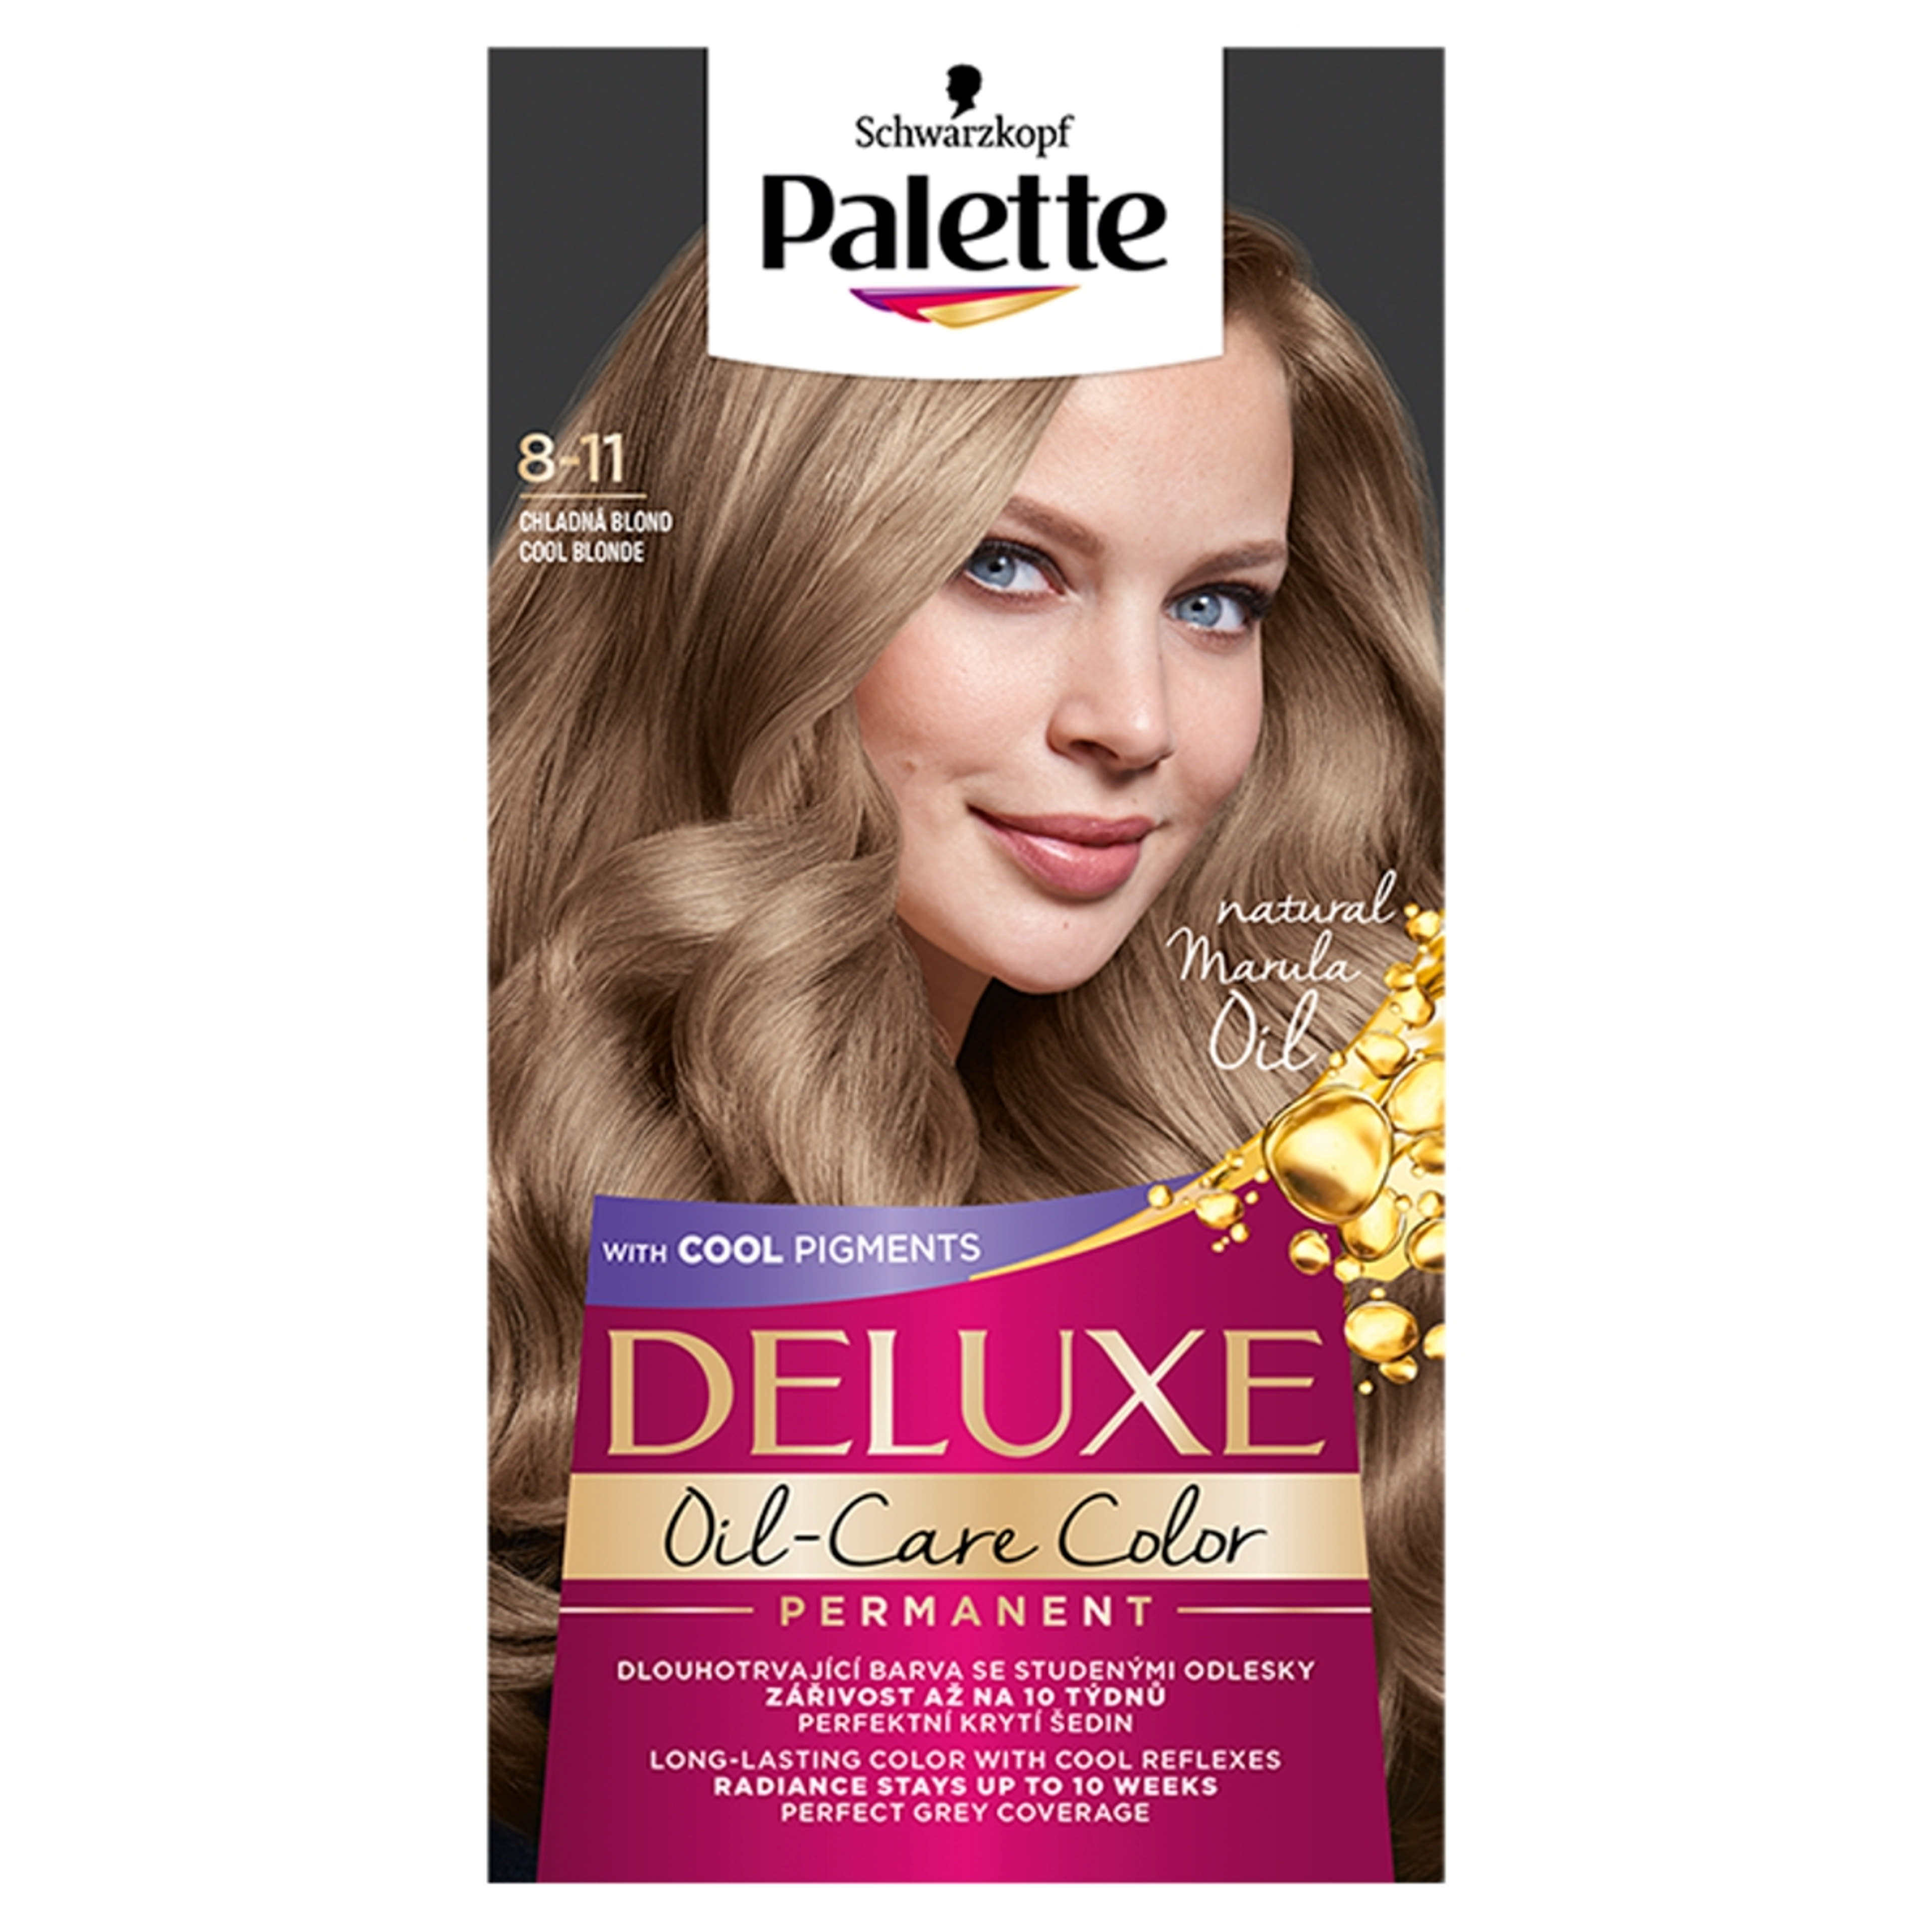 Palette Deluxe tartós hajfesték 8-11 hűvös természetes szőke - 1 db